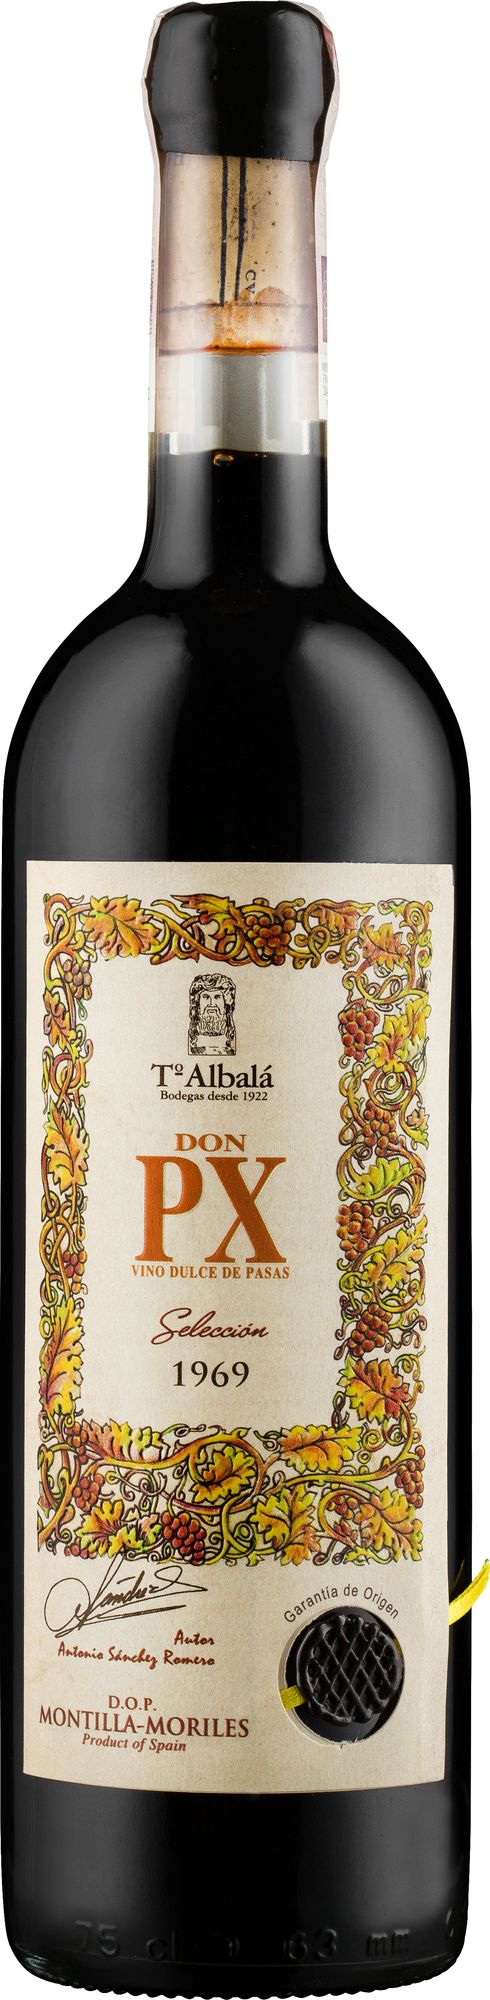 Wino Toro Albalá 1969 Don P.X. Seleccion Montilla-Morilles DO